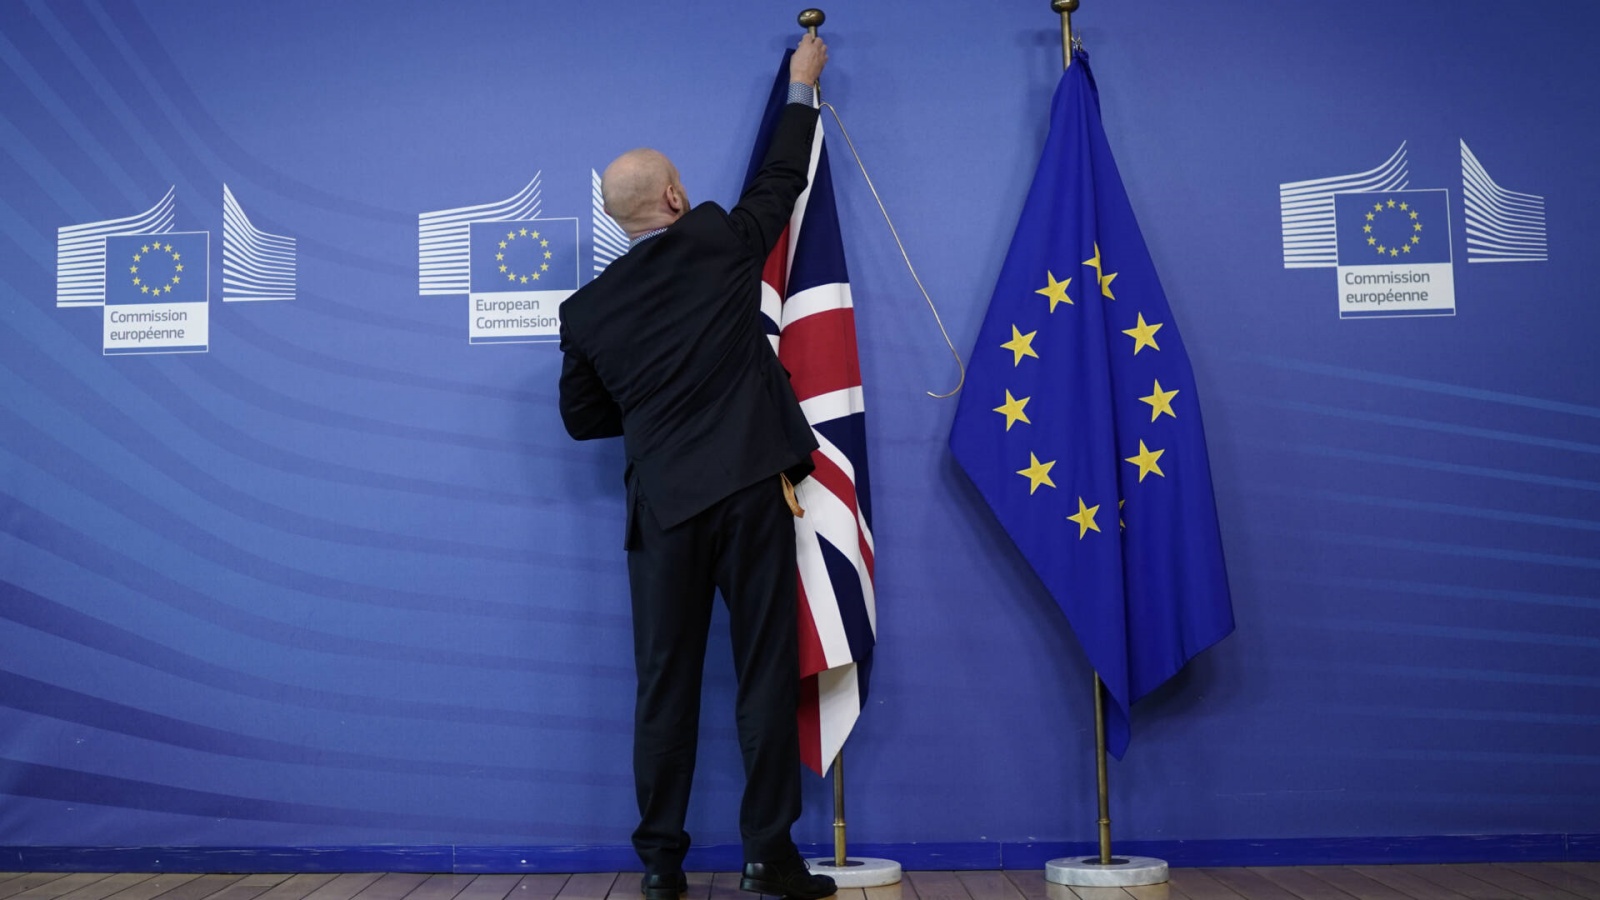  رئيس الوزراء البريطاني يوم 15 أكتوبر المقبل موعدا نهائيّا لإبرام اتفاق لمرحلة ما بعد بريكست مع الاتّحاد الأوروبي